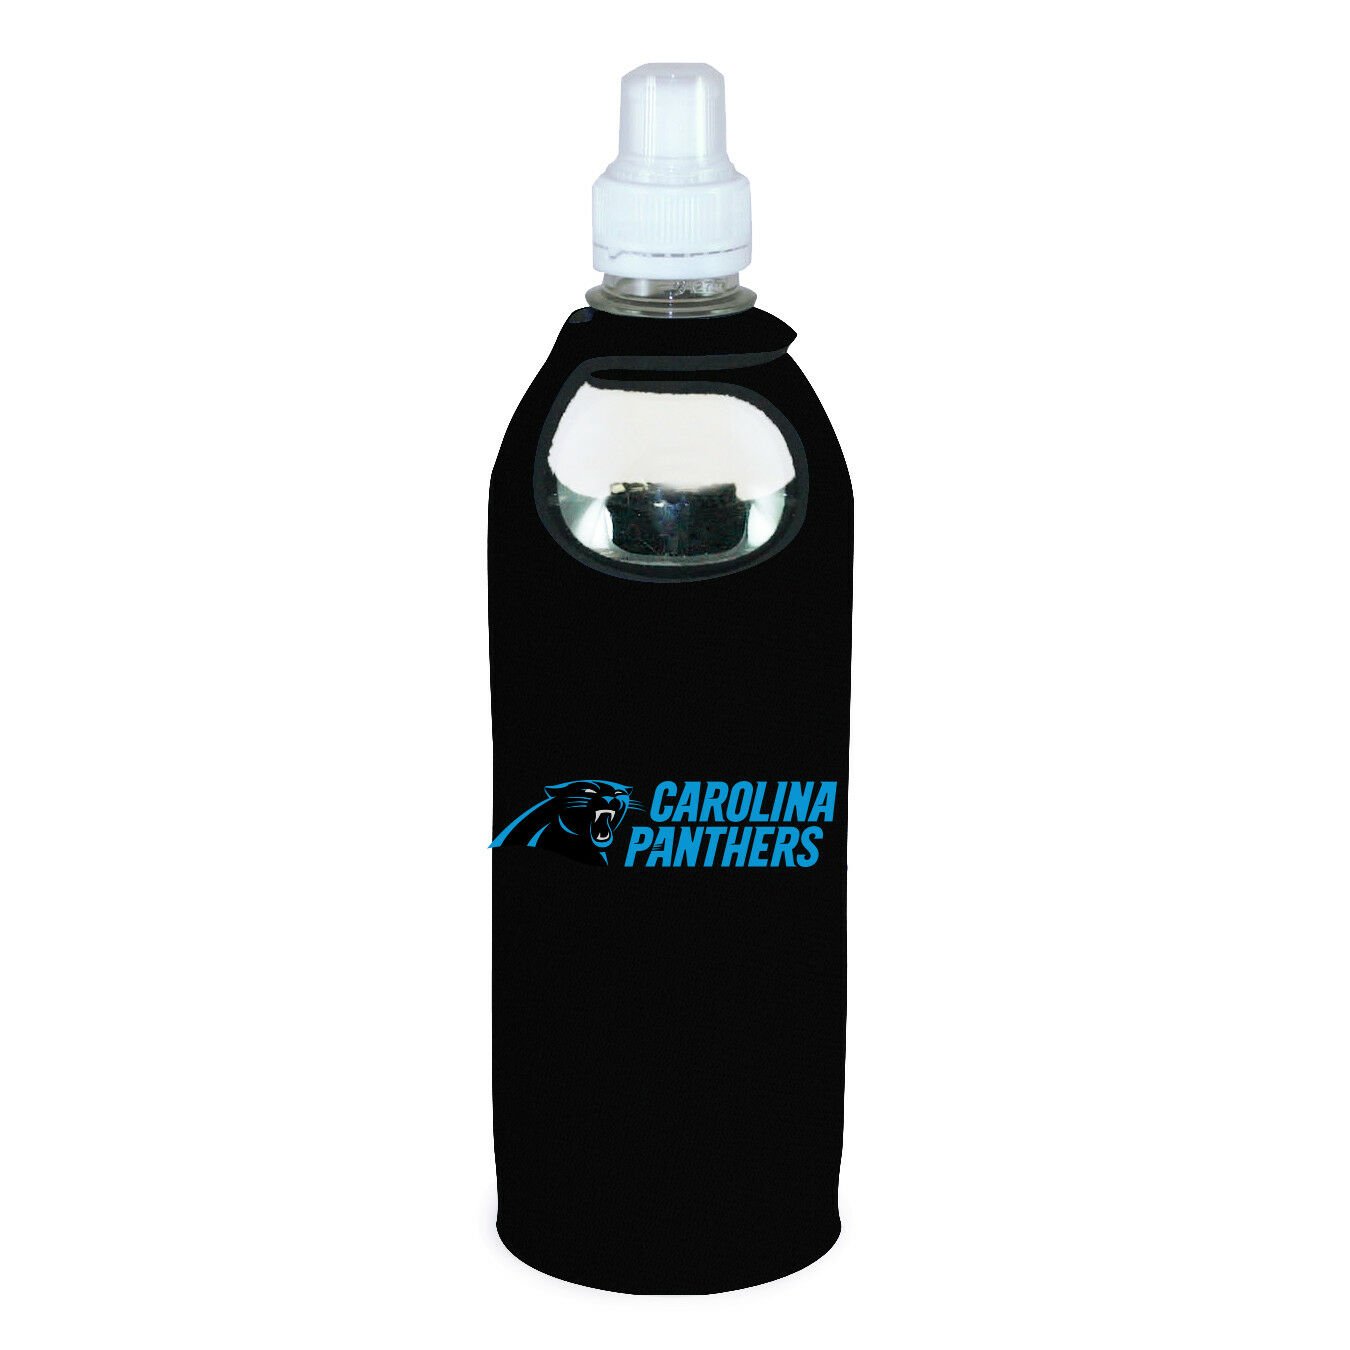 Carolina Panthers 1/2 Liter Water Soda Bottle Koozie Holder Cooler Clip Football